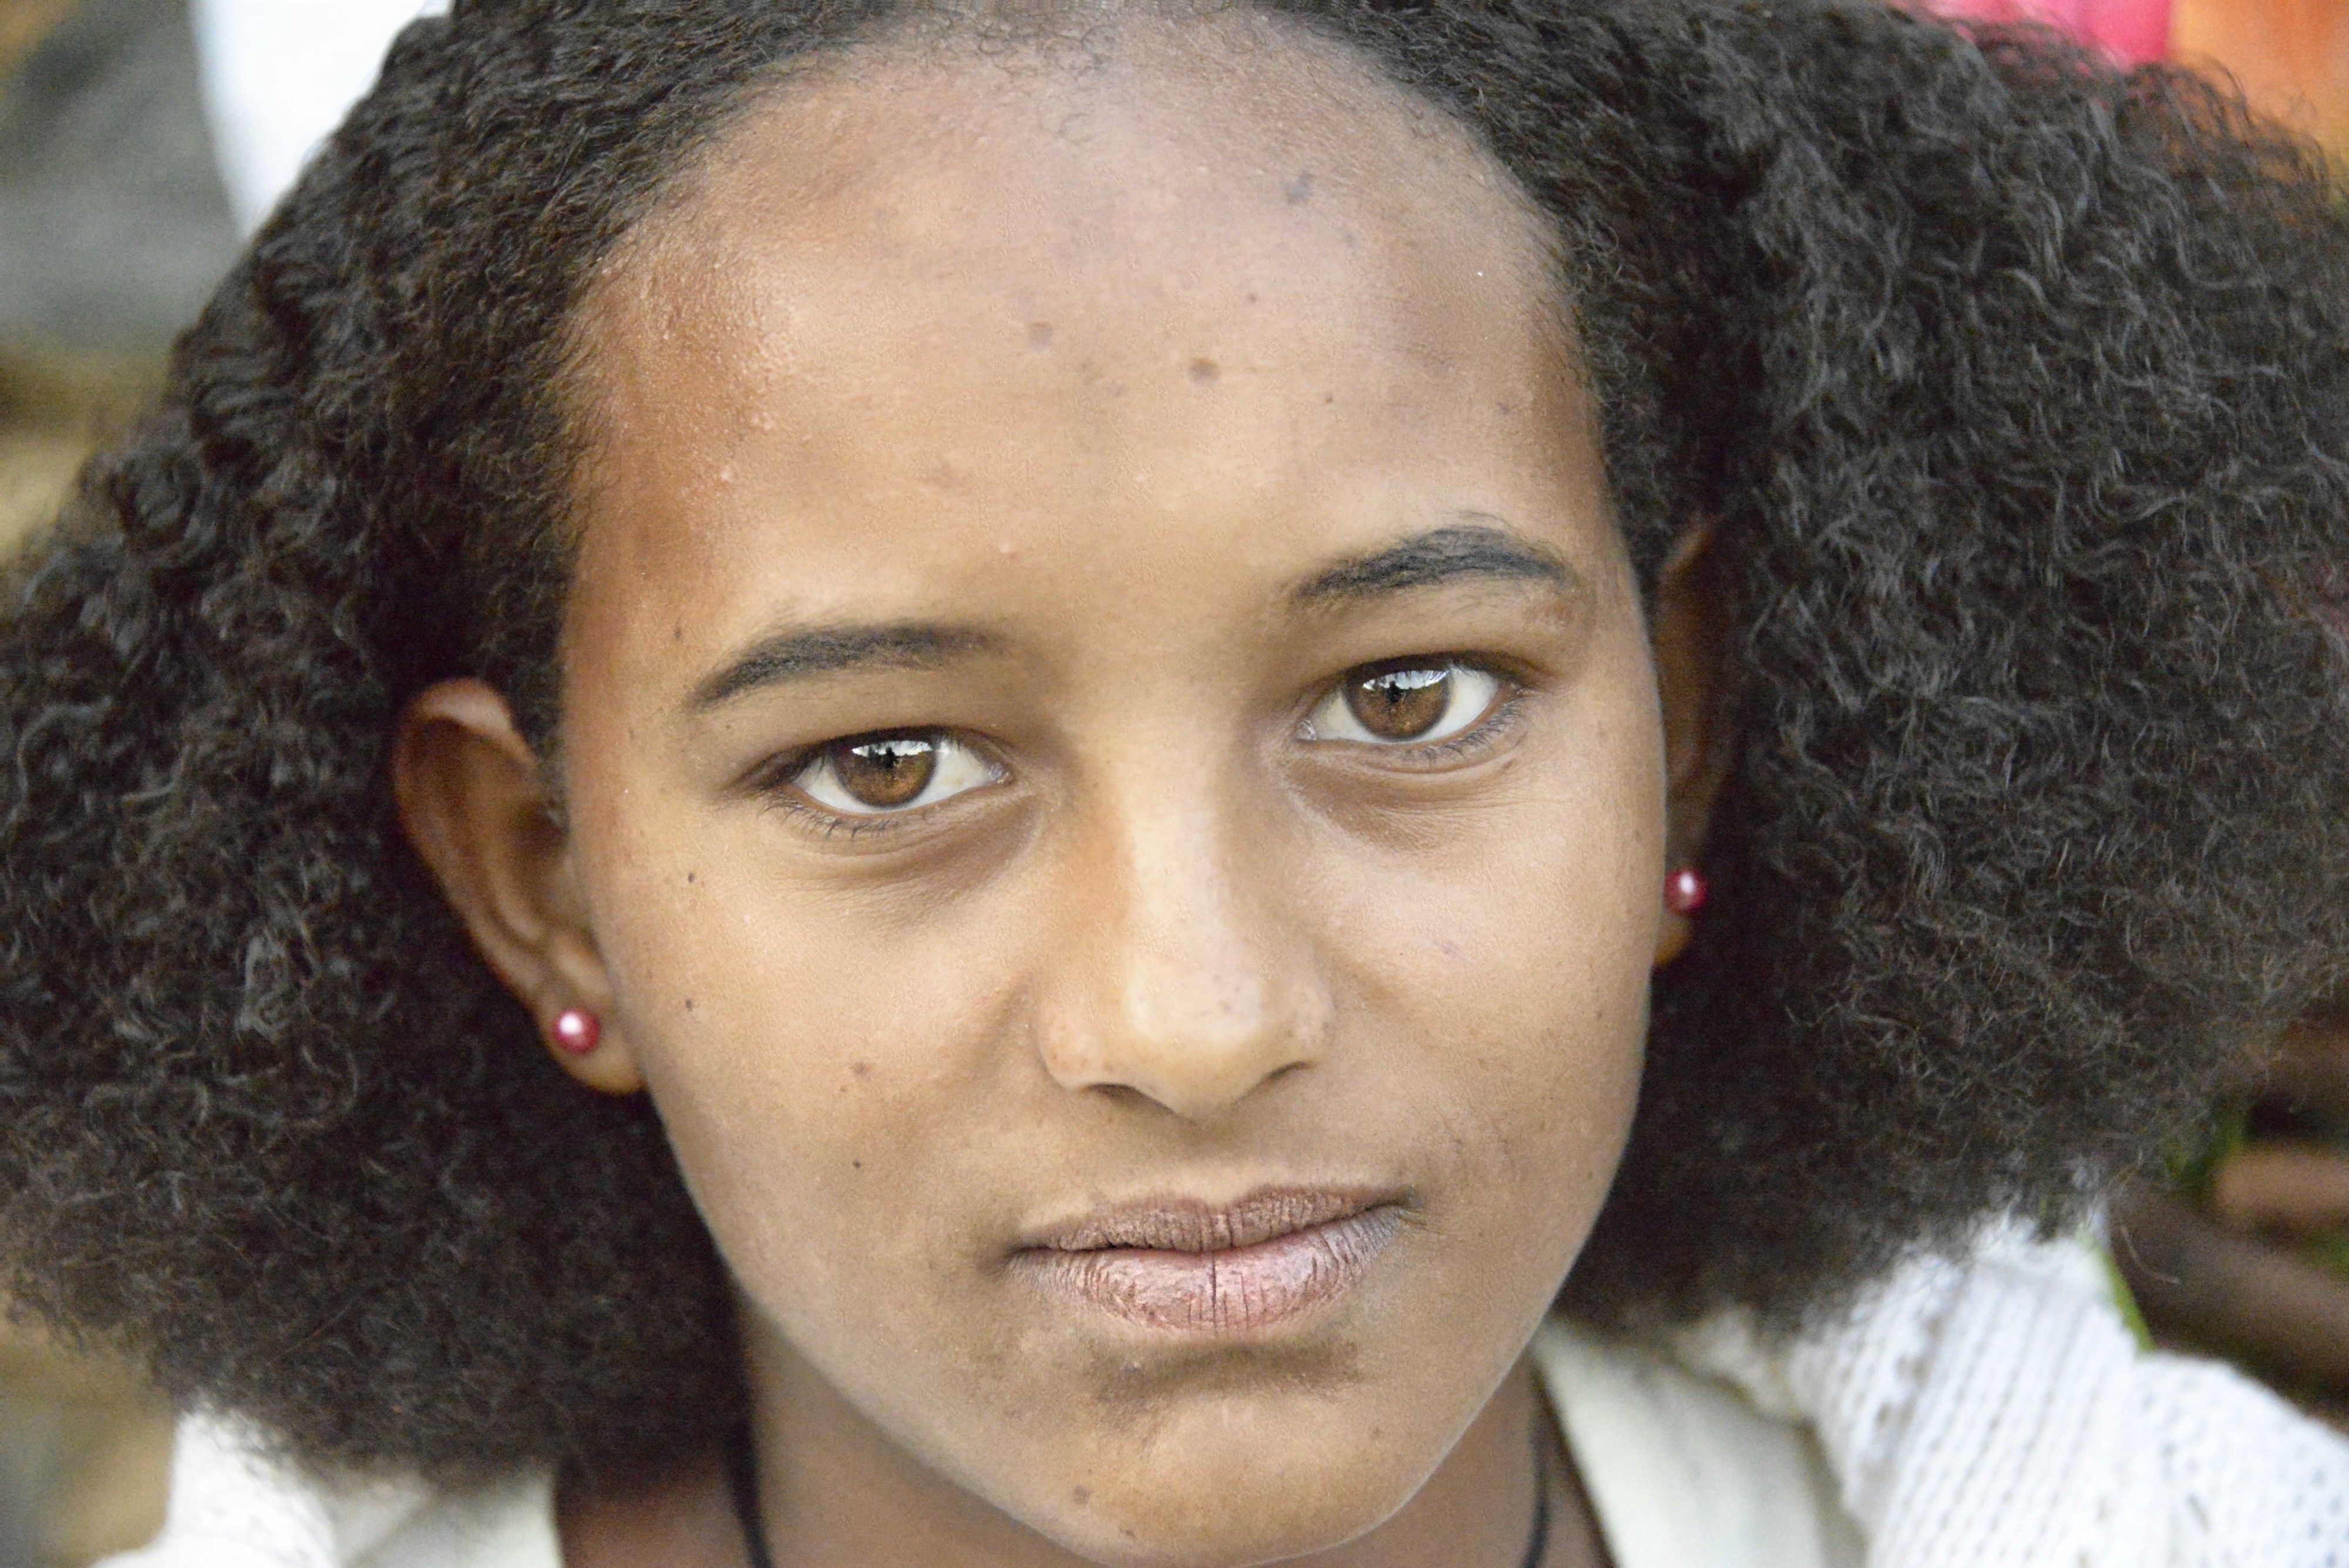 Tigray Girl, Ethiopia (12167329453)